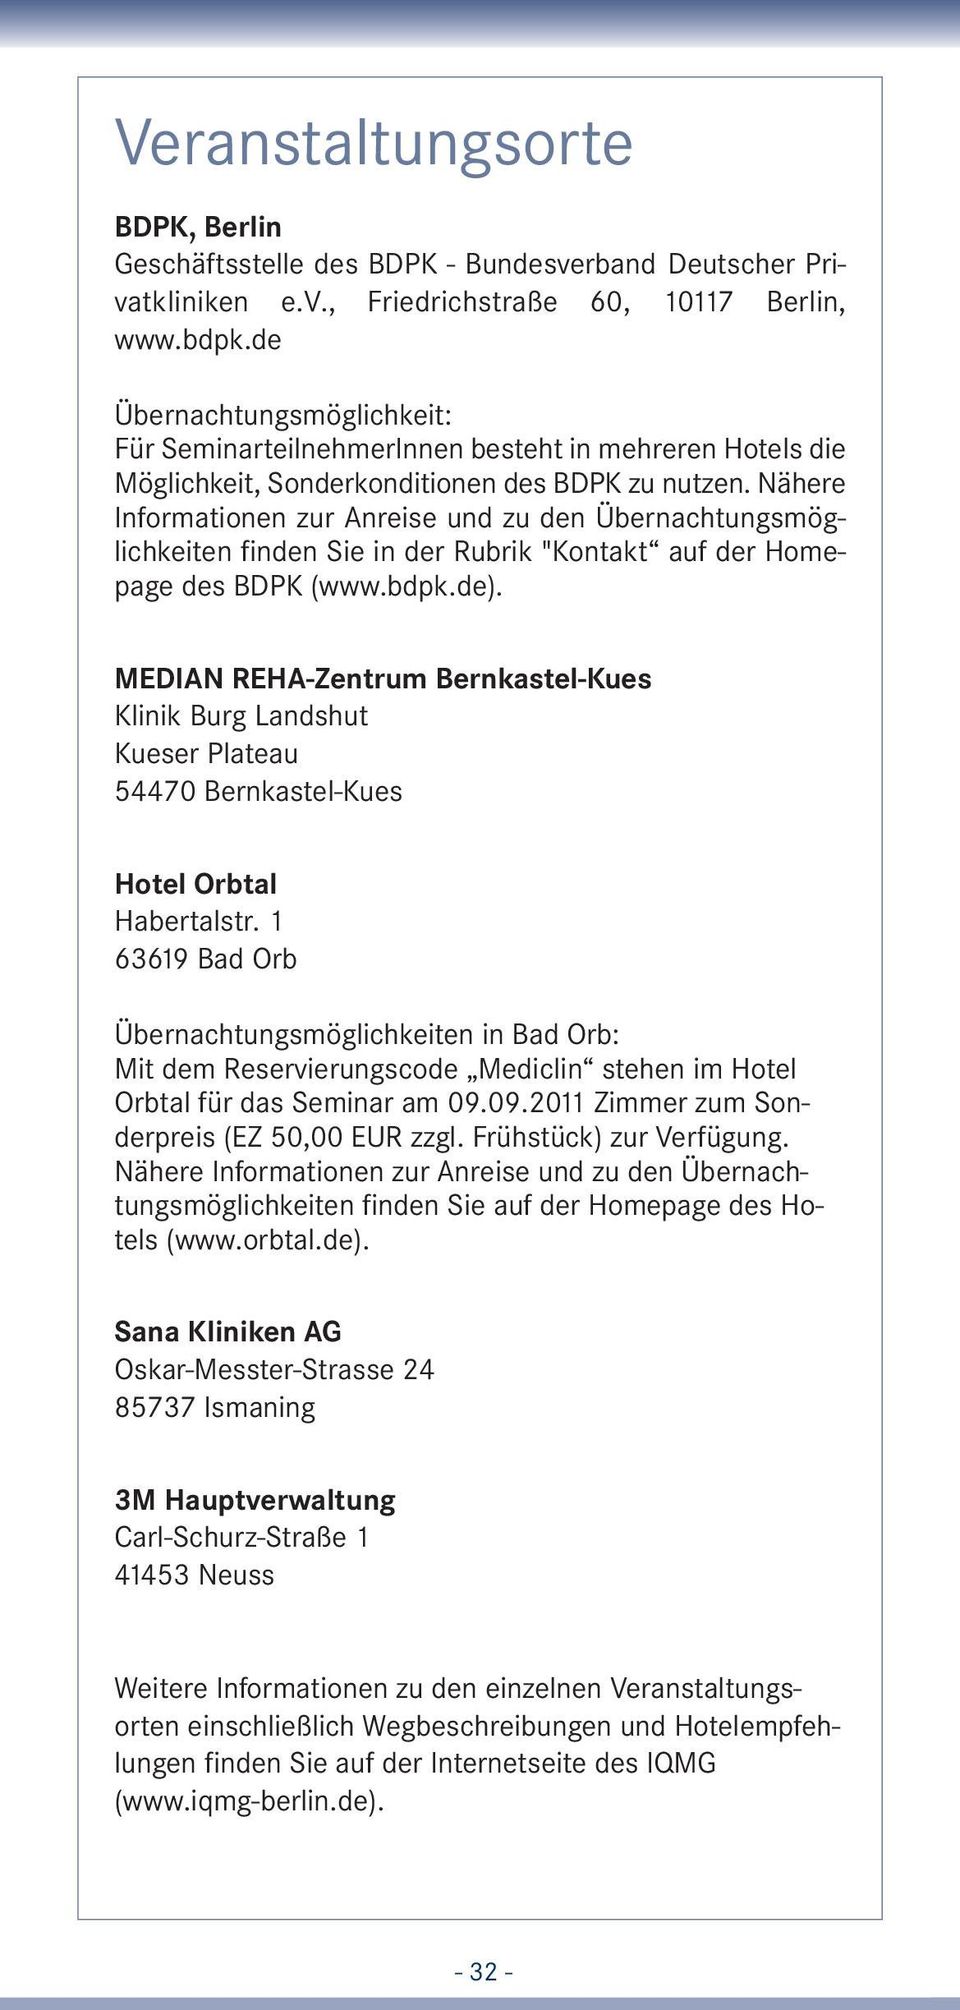 Nähere Informationen zur Anreise und zu den Übernachtungsmöglichkeiten finden Sie in der Rubrik "Kontakt auf der Homepage des BDPK (www.bdpk.de).